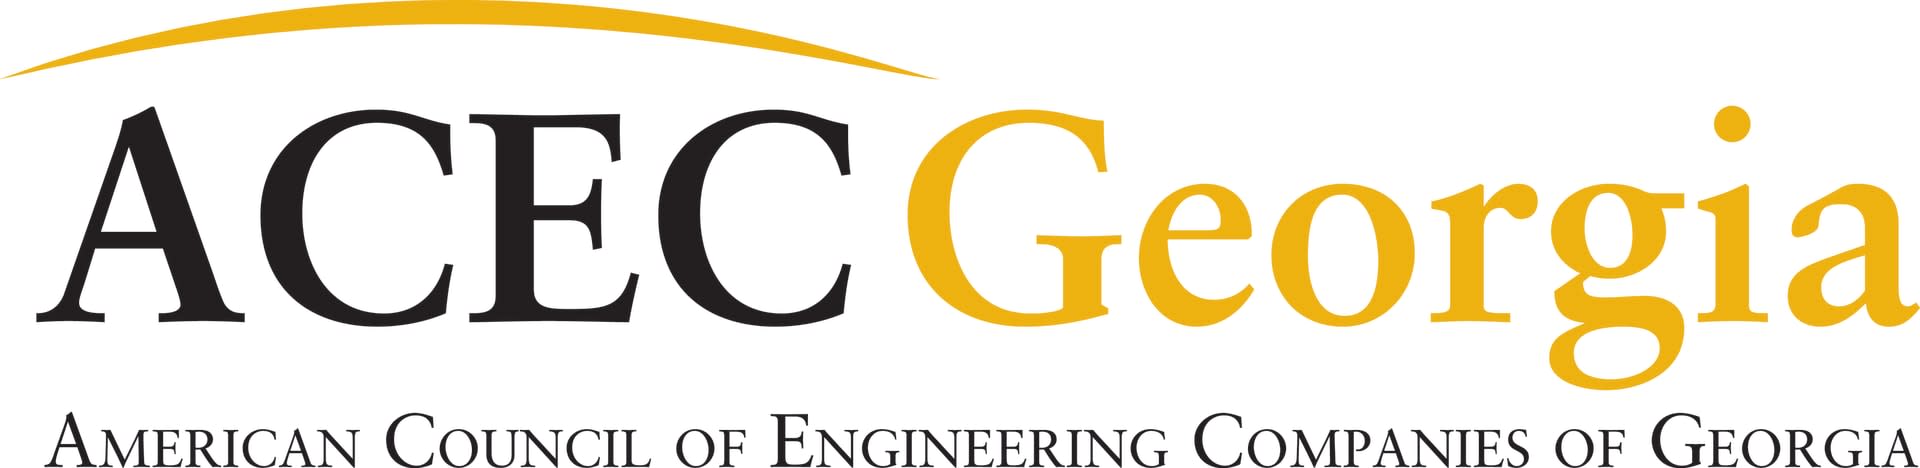 ACEC-Georgia-Logo-1920px